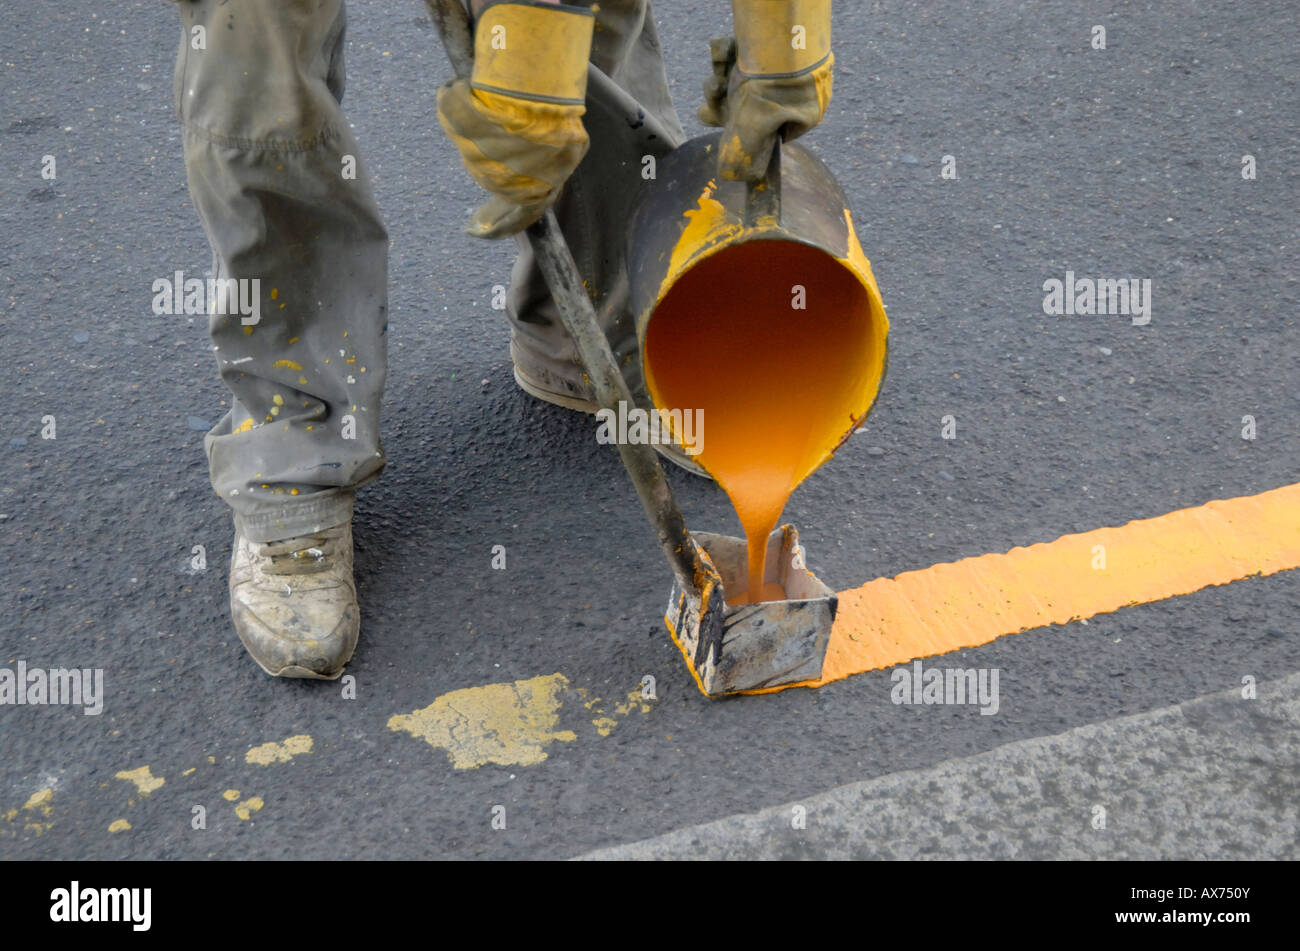 Pittura a mano singola linea gialla sulla strada con bollitore di acqua calda di vernice e utensile di marcatura, Cheam, a sud di Londra - Inghilterra Foto Stock